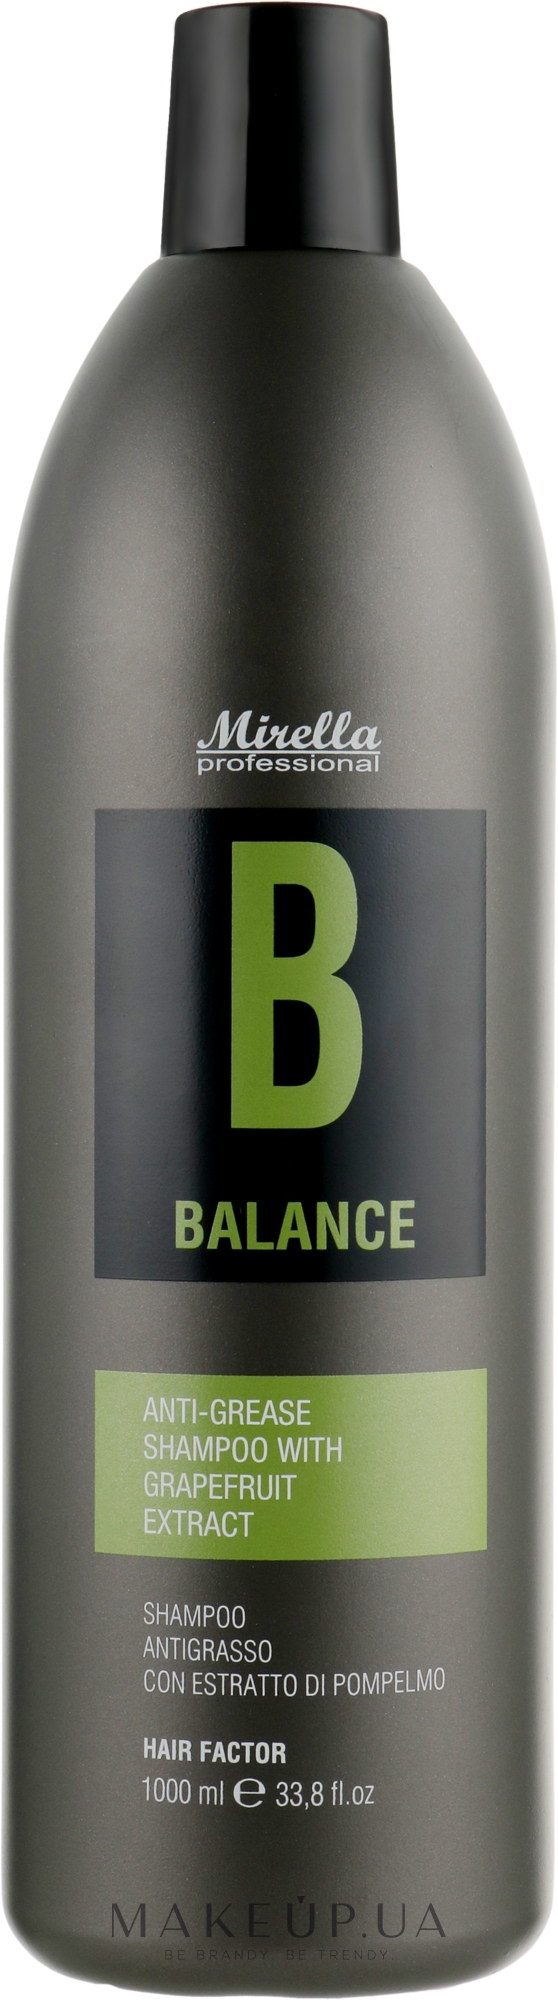 Шампунь для волос, склонных к жирности с экстрактом грейпфрута - Mirella Hair Factor Balance Shampoo — фото 1000ml